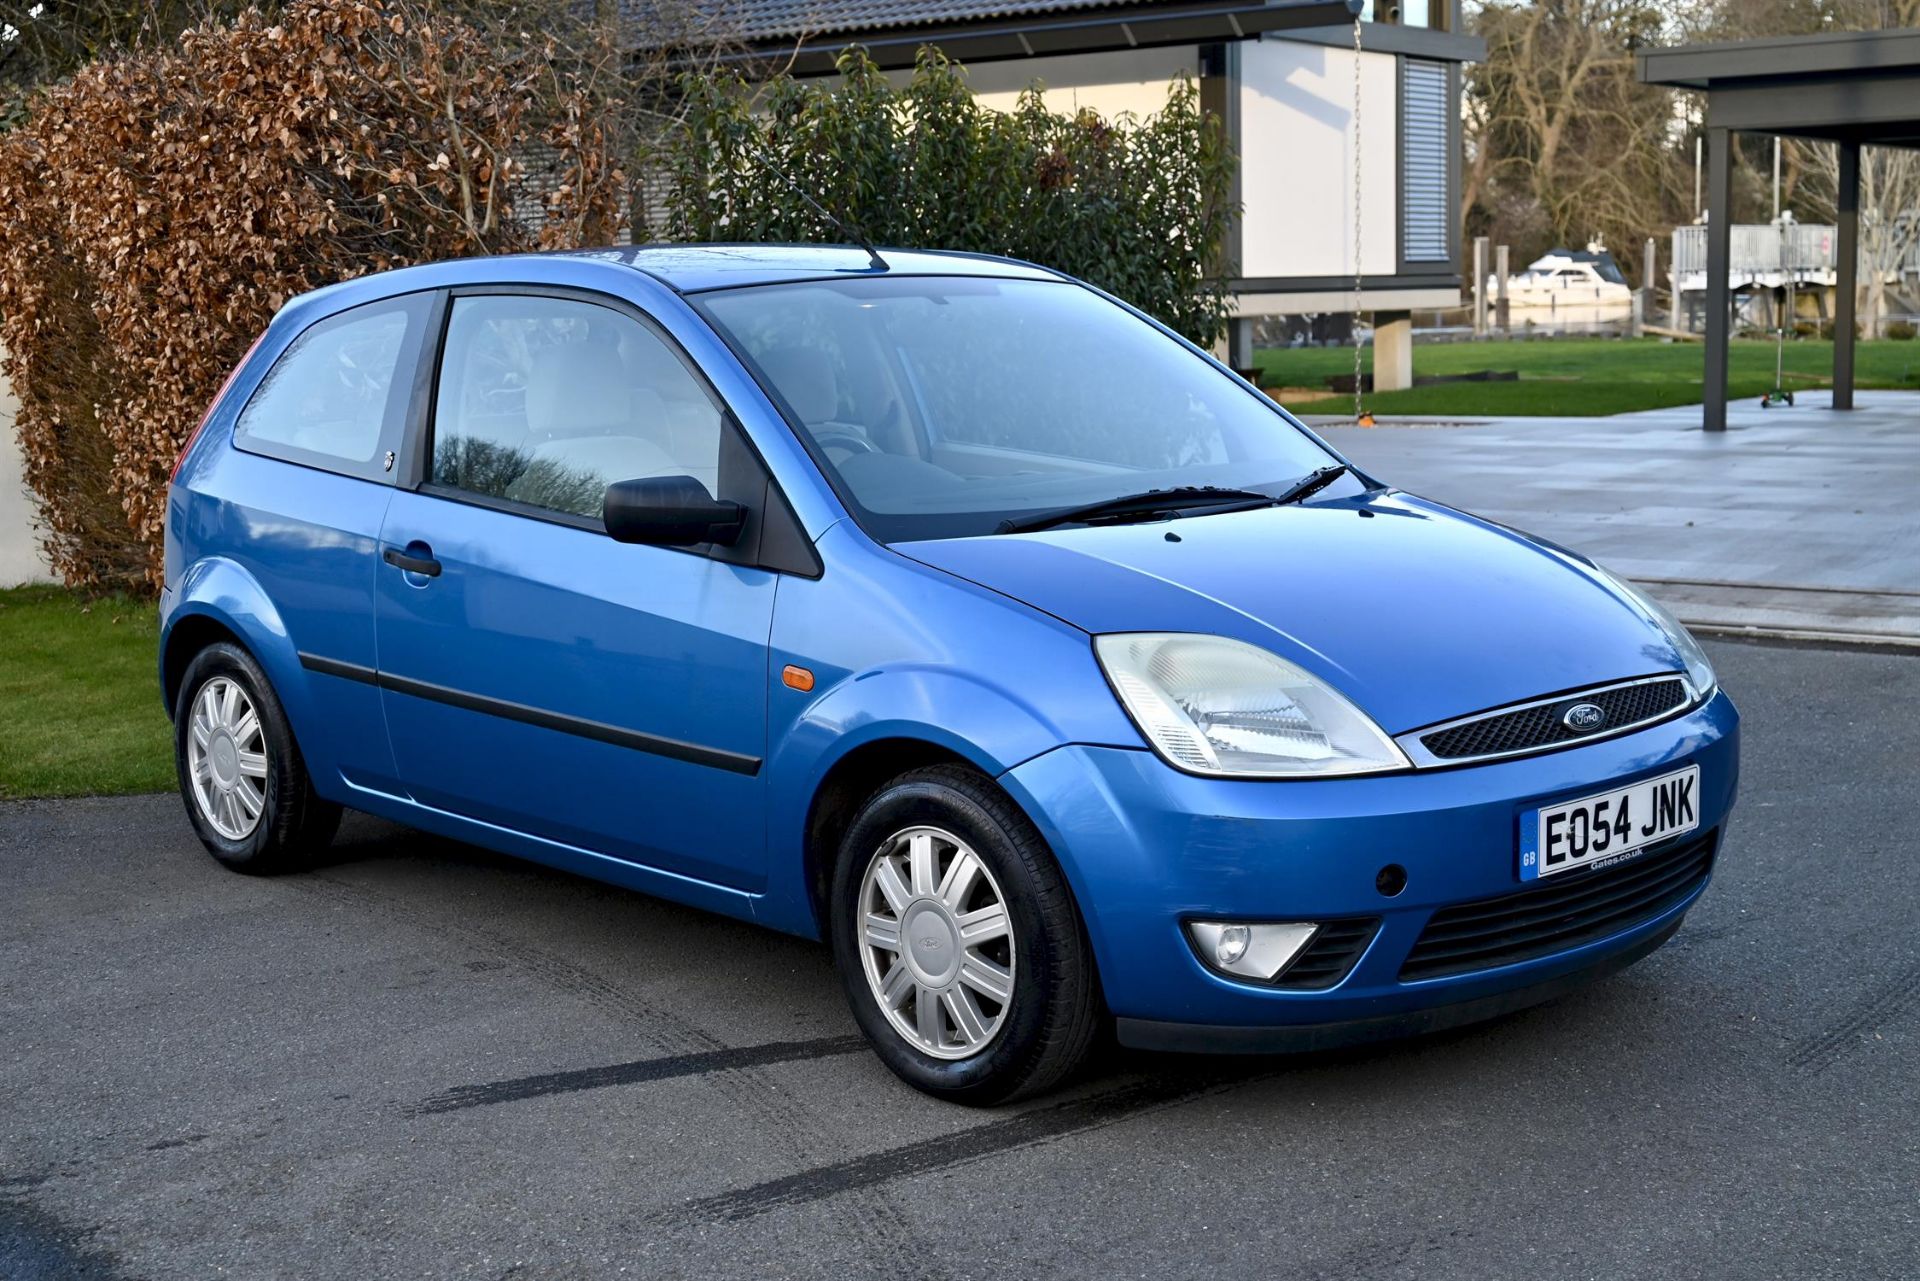 2004 Ford Fiesta 1.4 Ghia 3-door hatchback. Registration number: EO54 JNK. Metallic Aquarius Blue, - Image 16 of 16